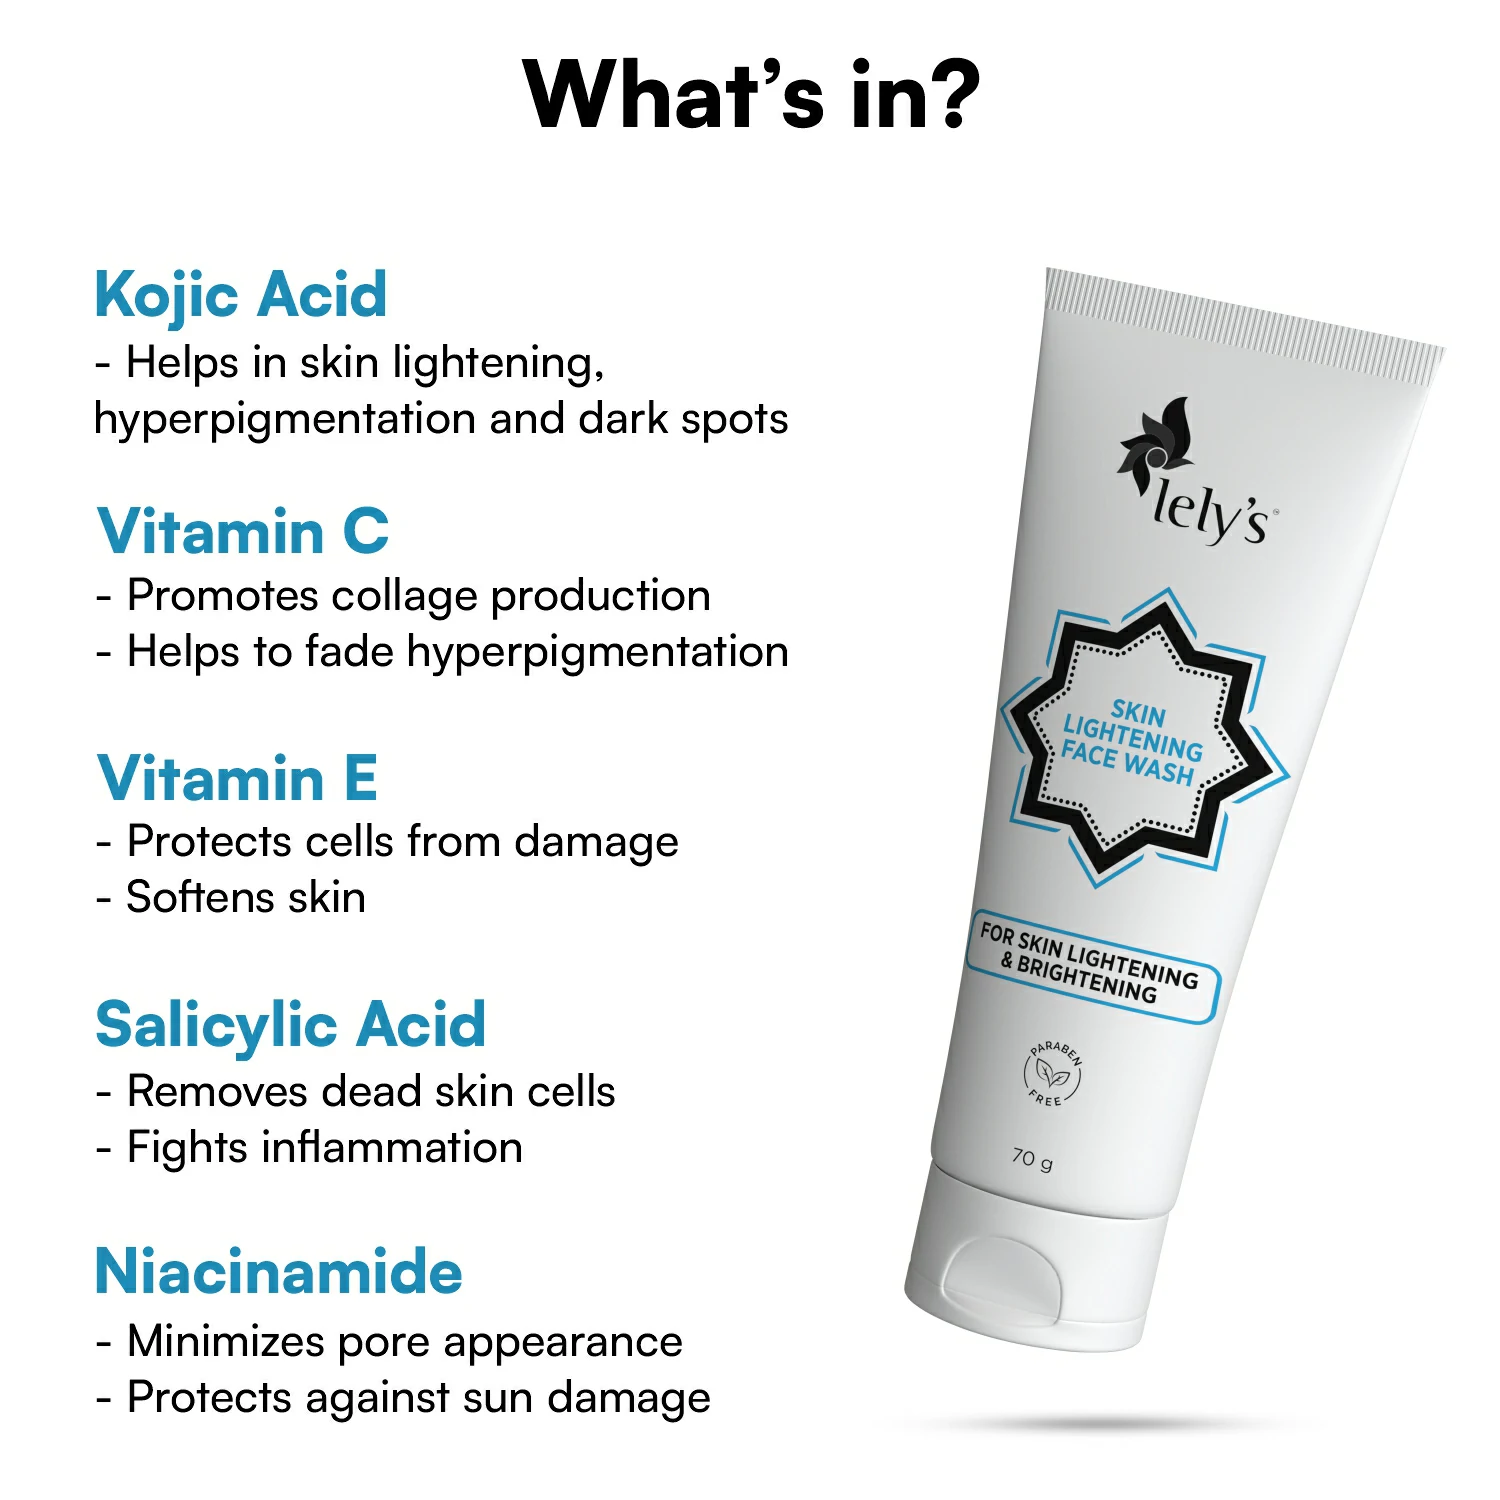 Main ingredients for skin lightening face wash